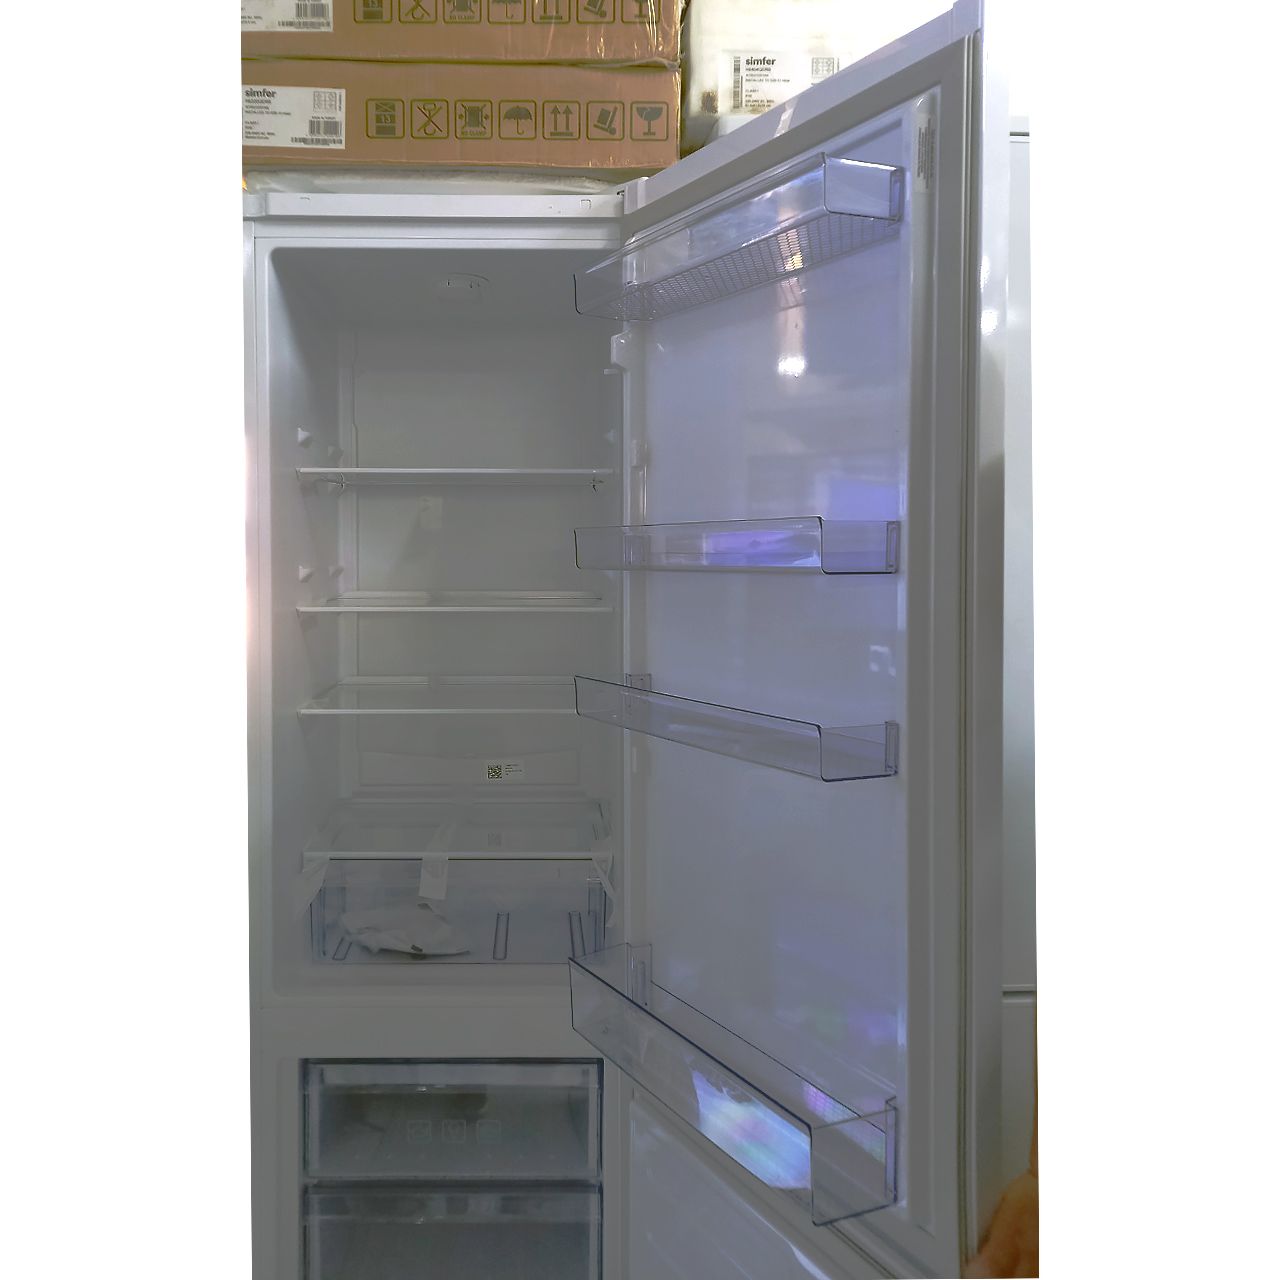 Холодильник двухкамерный Beko 300 литров